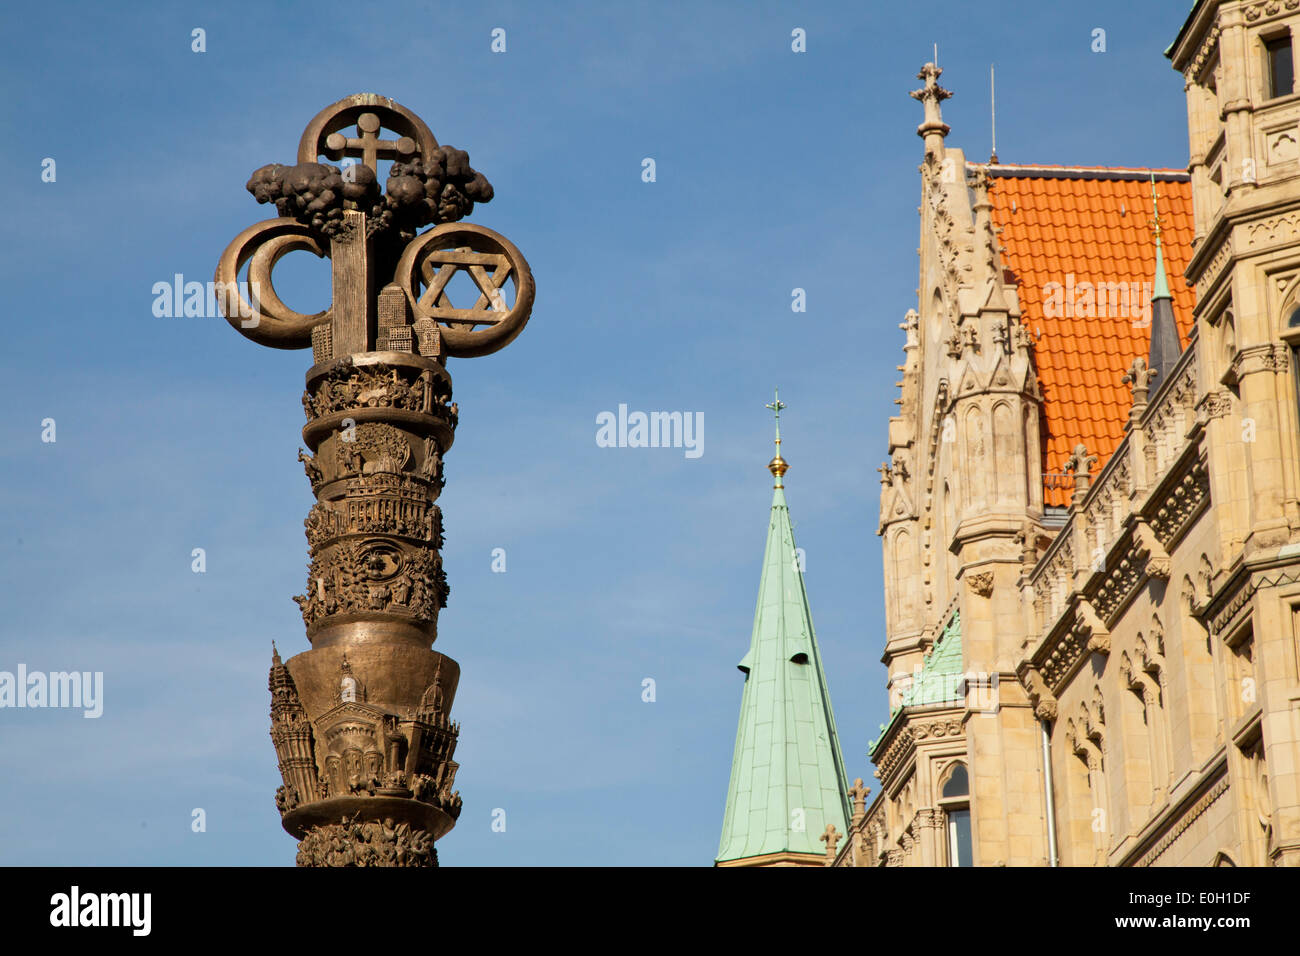 Columna de Cristianismo enfrente del castillo Dankwarderode, sculpure del escultor Juergen Weber, la historia del cristianismo, Brunswick Foto de stock